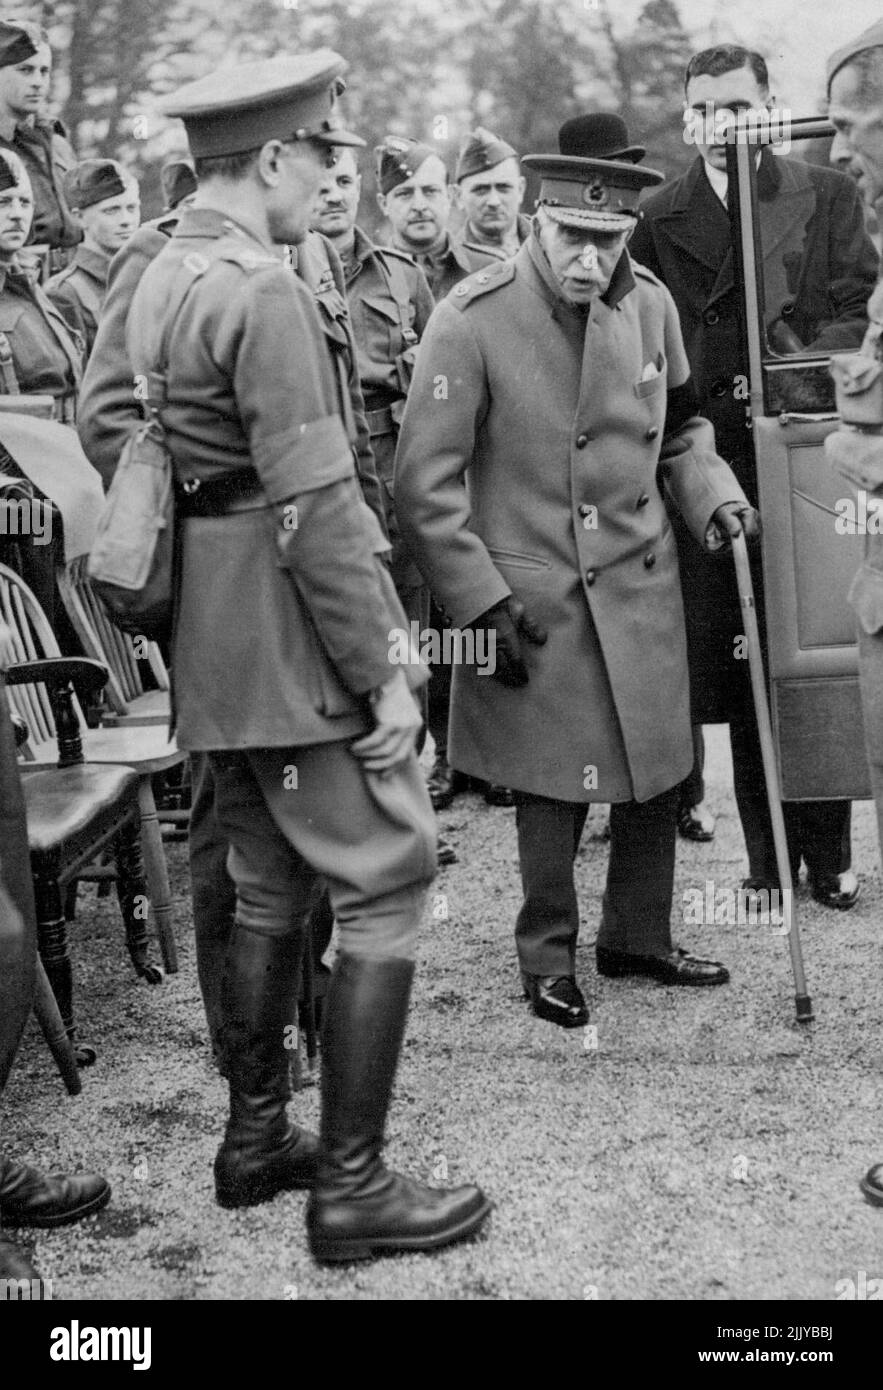 S.A.R. el duque de Connaught inspecciona a los canadienses -- el duque de Connaught regresando a su ***** En compañía del General de División A.G.L. McNaughton ***** (Al mando de las Fuerzas Canadienses en Inglaterra) después de la inspección. El duque de Connaught, como Coronel en Jefe del Real Regimiento Canadiense, los inspeccionó en Aldershot. El próximo miércoles tiene 90 años. 29 de abril de 1940. (Foto de Topical Press). Foto de stock